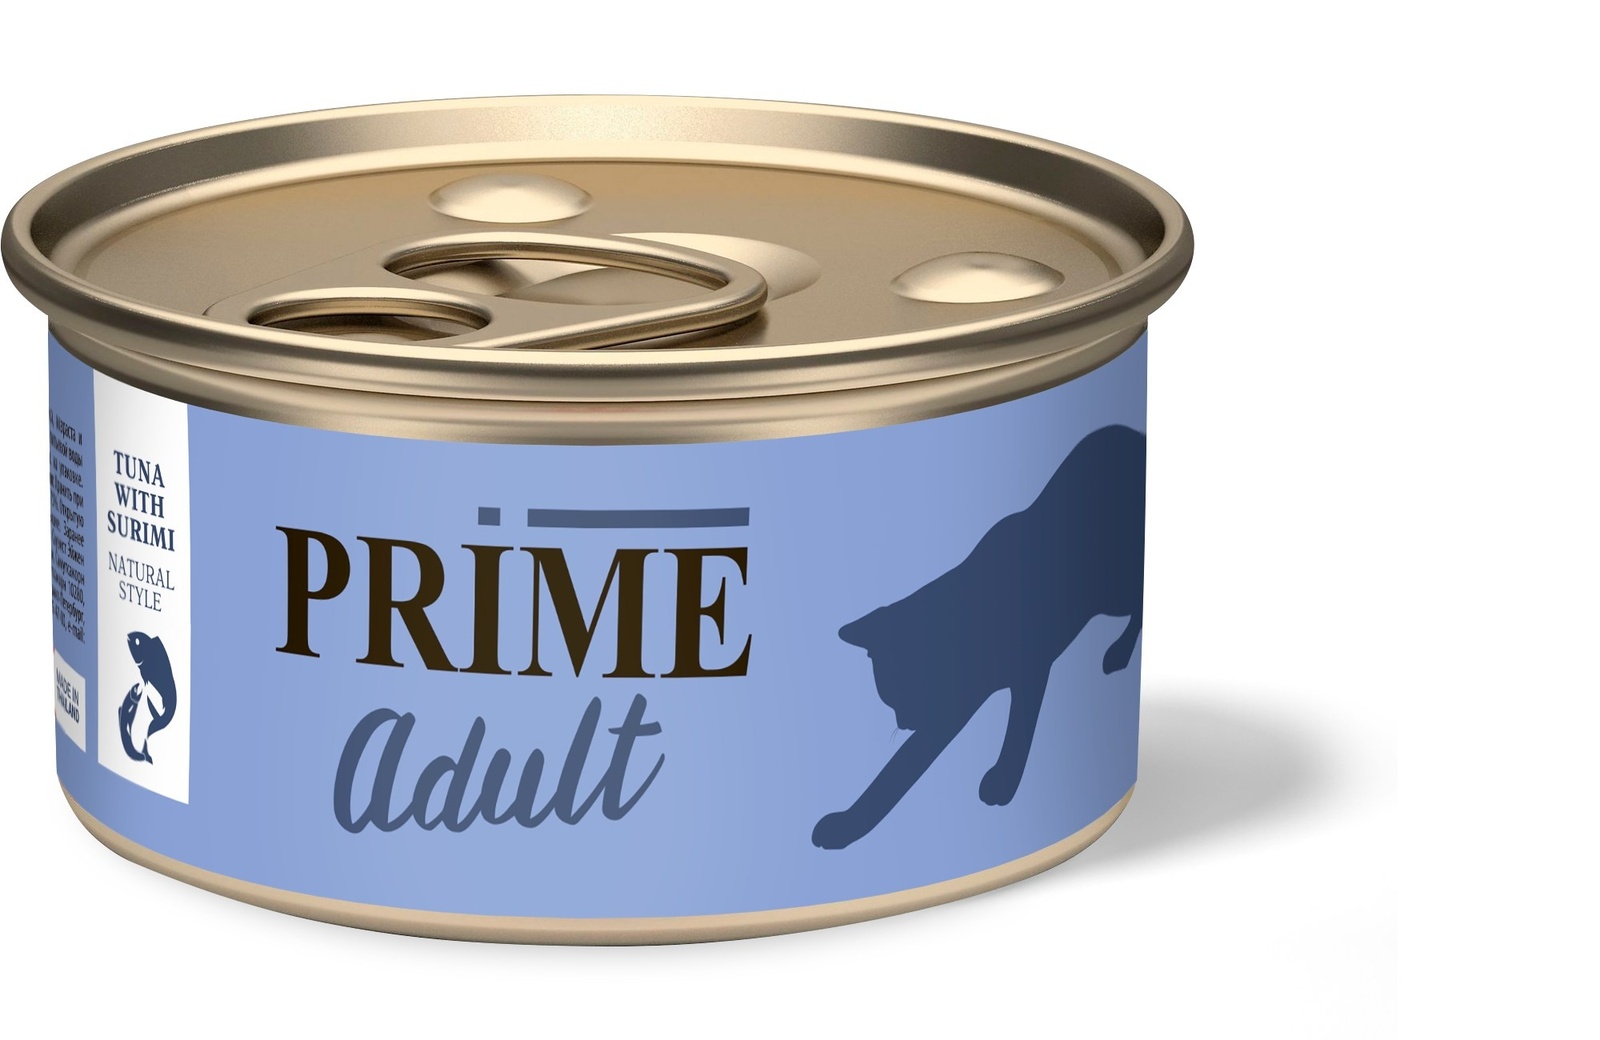 Prime Prime консервы для кошек тунец с сурими в собственном соку (70 г) фасоль красная фрау марта в собственном соку 310 г